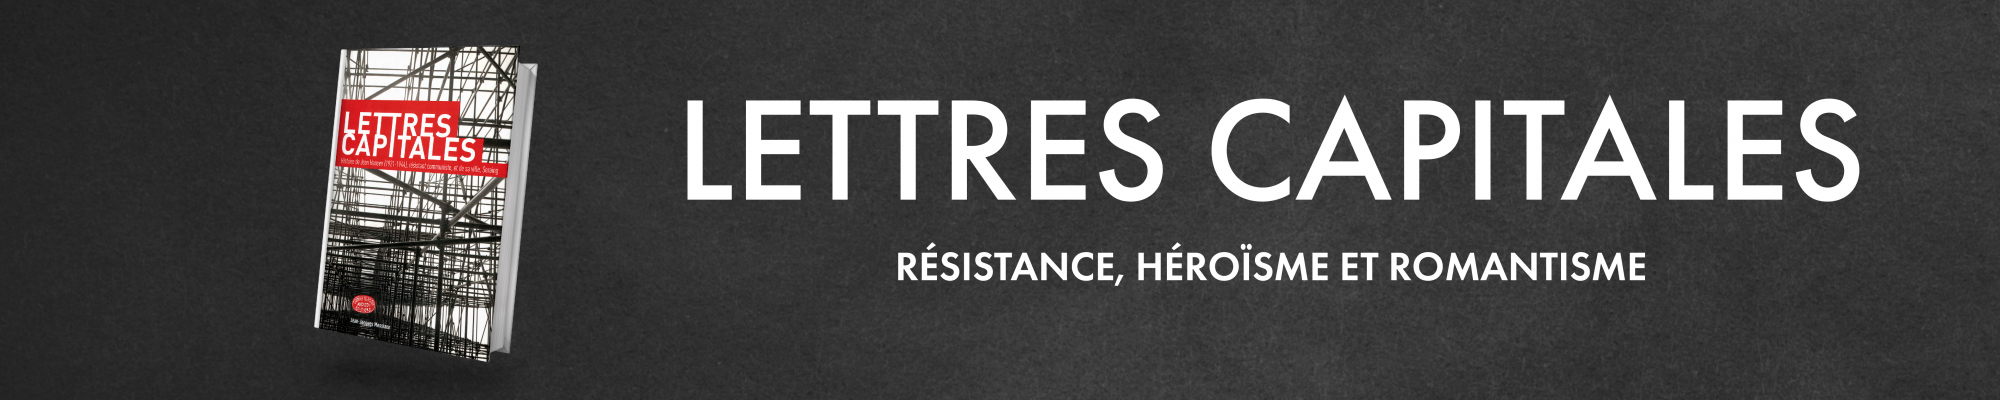 Lettre capitales : résistance, héroisme et romantisme 